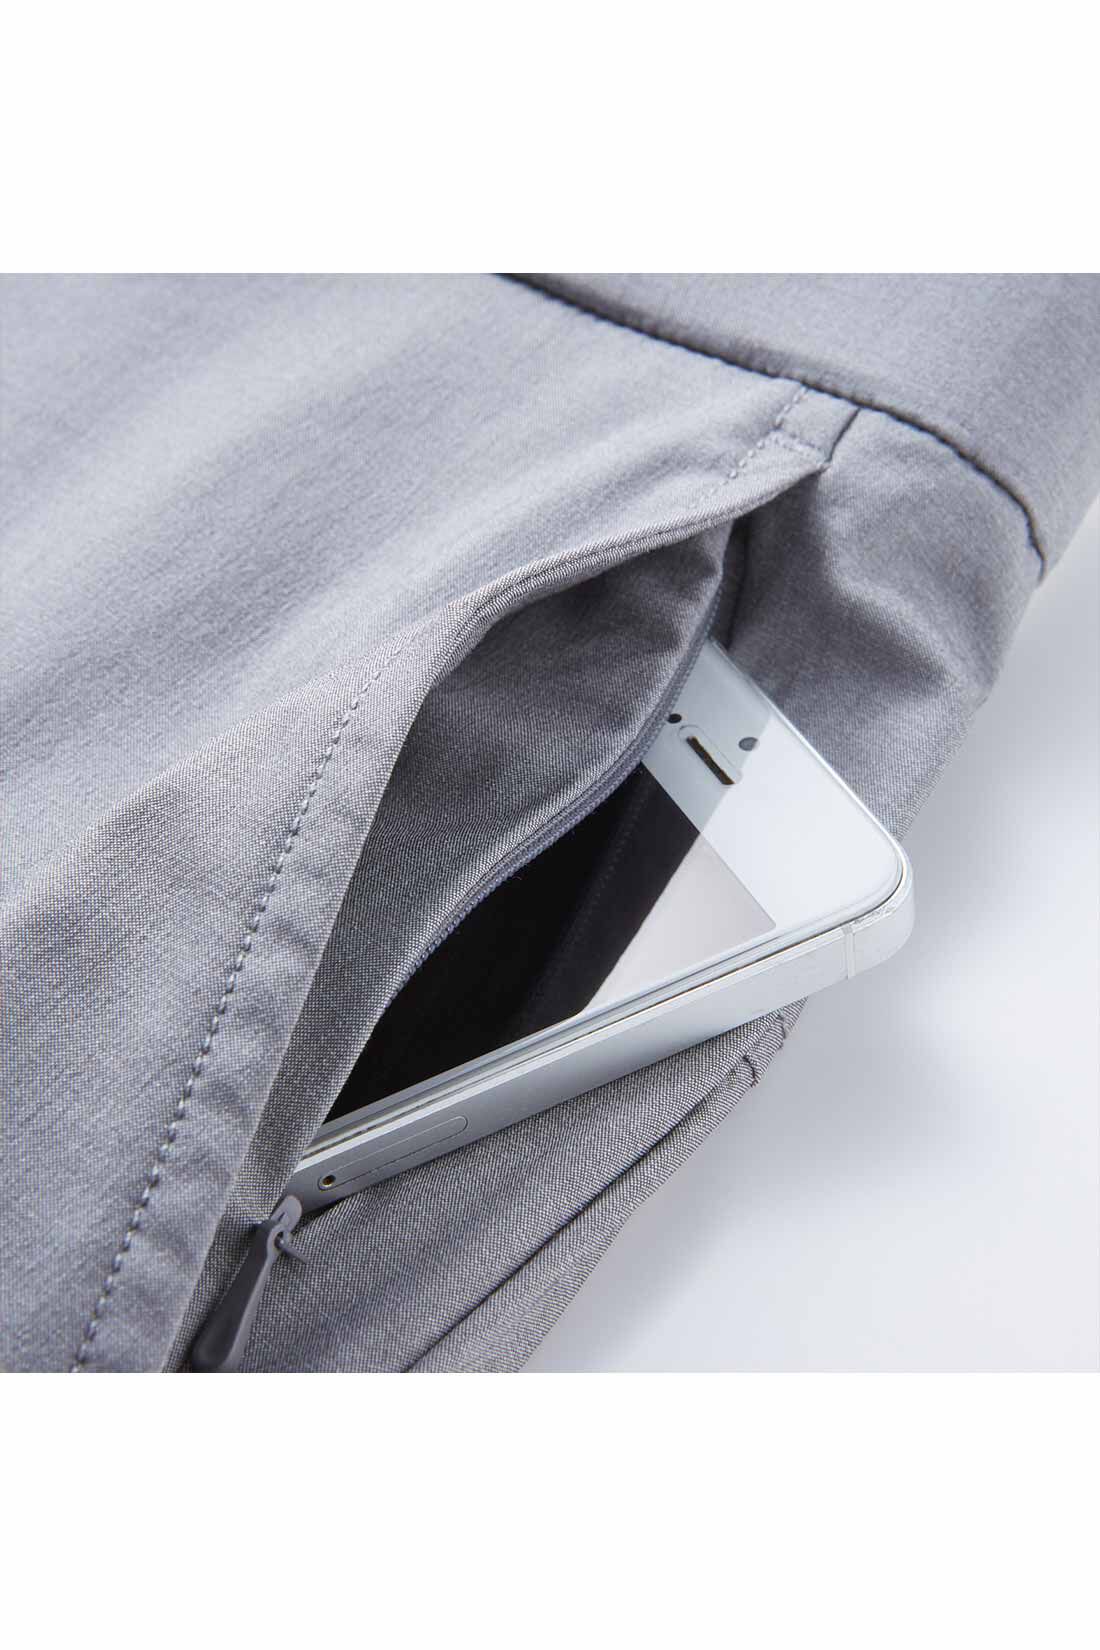 IEDIT[イディット]　UVカット・吸汗速乾・接触冷感がうれしい エア軽（かる）ライト素材の涼やかパンツ メンズ（テーパード）〈ブラック〉|左わきのポケットはダブルポケット仕様。落下防止のコンシールファスナー付き。